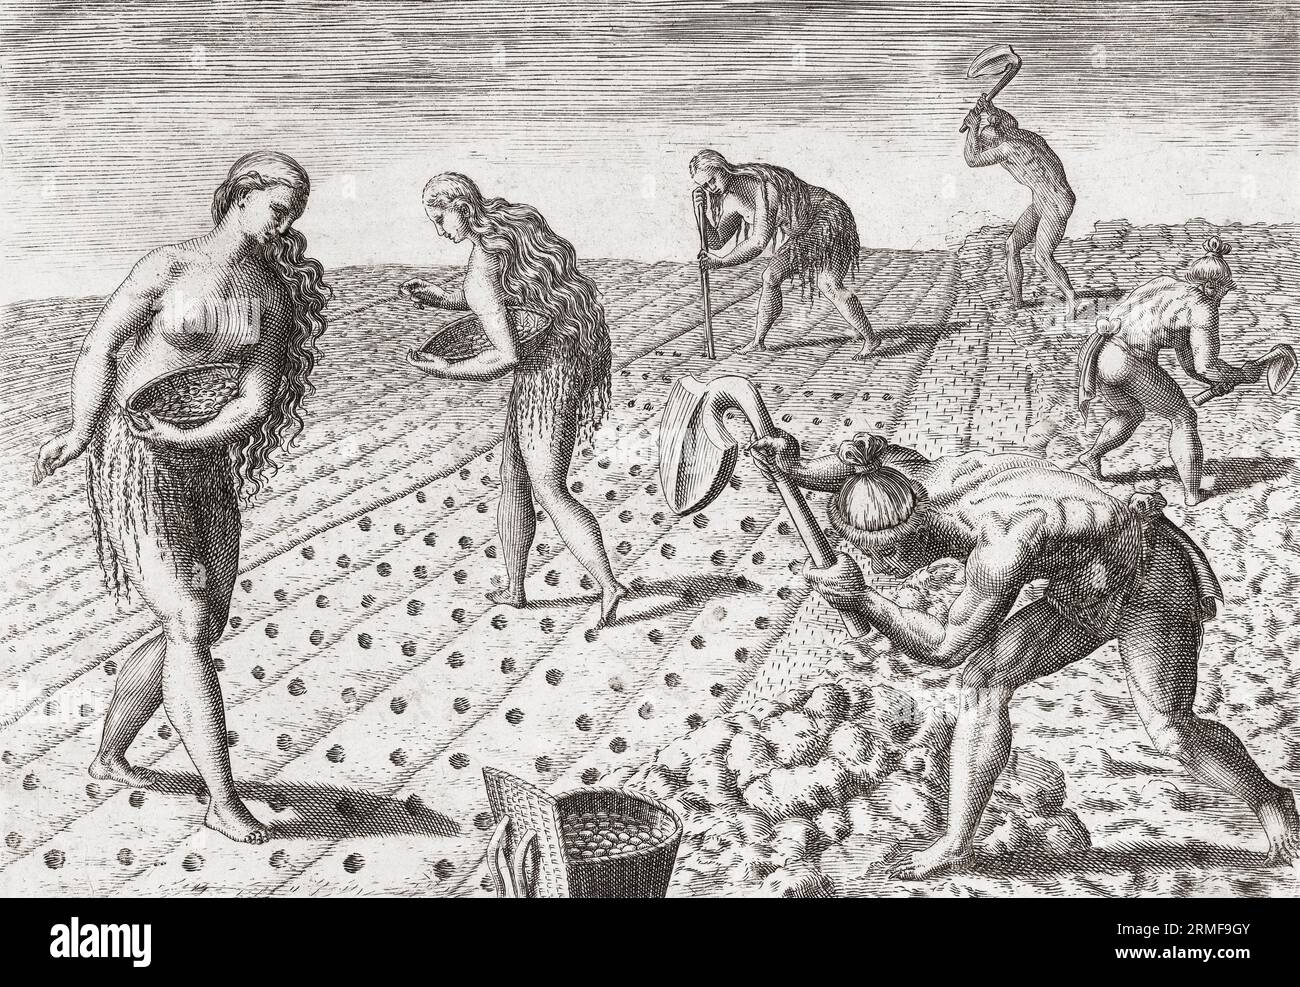 Indianer, Männer und Frauen, befruchten den Boden und Pflanzen Samen. Nach einem Werk von Theodor de Bry aus dem späten 16. Jahrhundert. Stockfoto